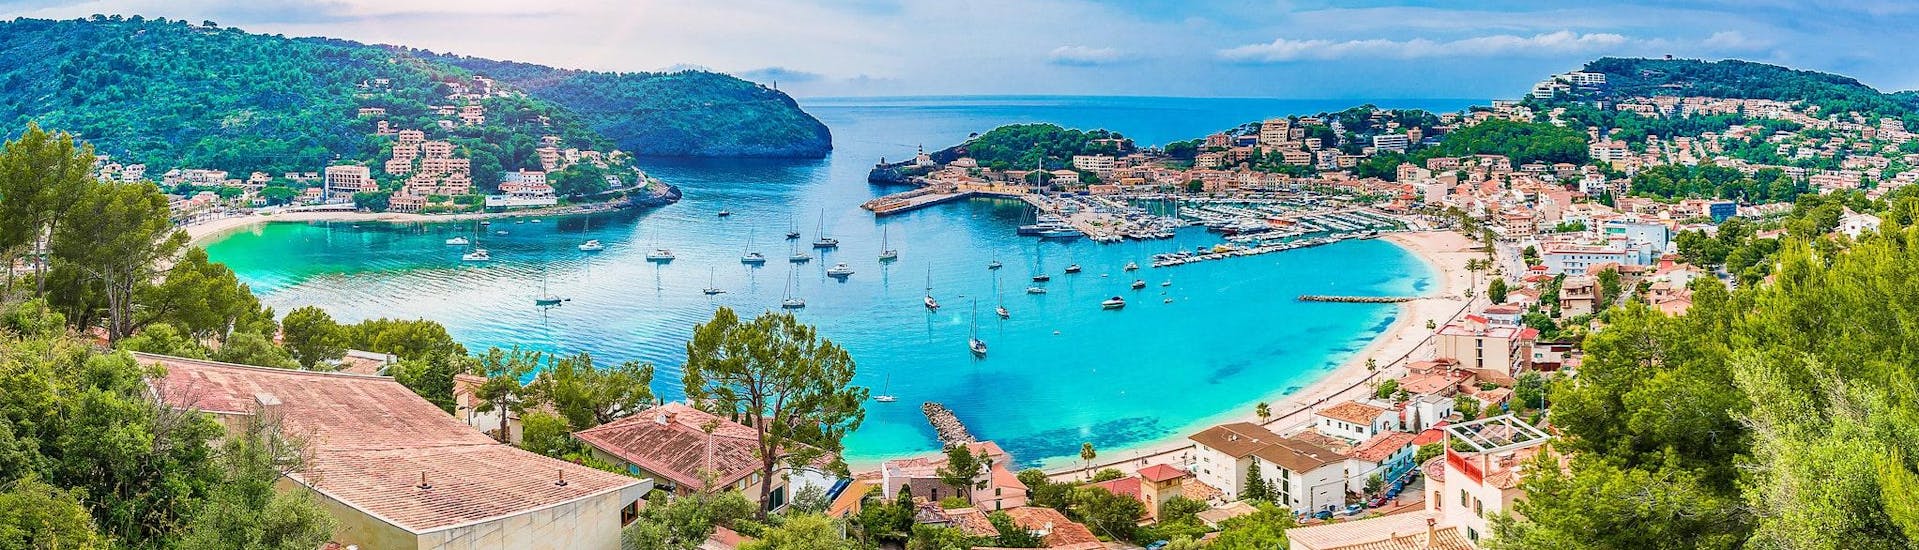 Une vue magnifique sur le Port de Sollér, d'où vous pouvez commencer de merveilleuses balades en bateau le long de la côte ouest de Majorque.